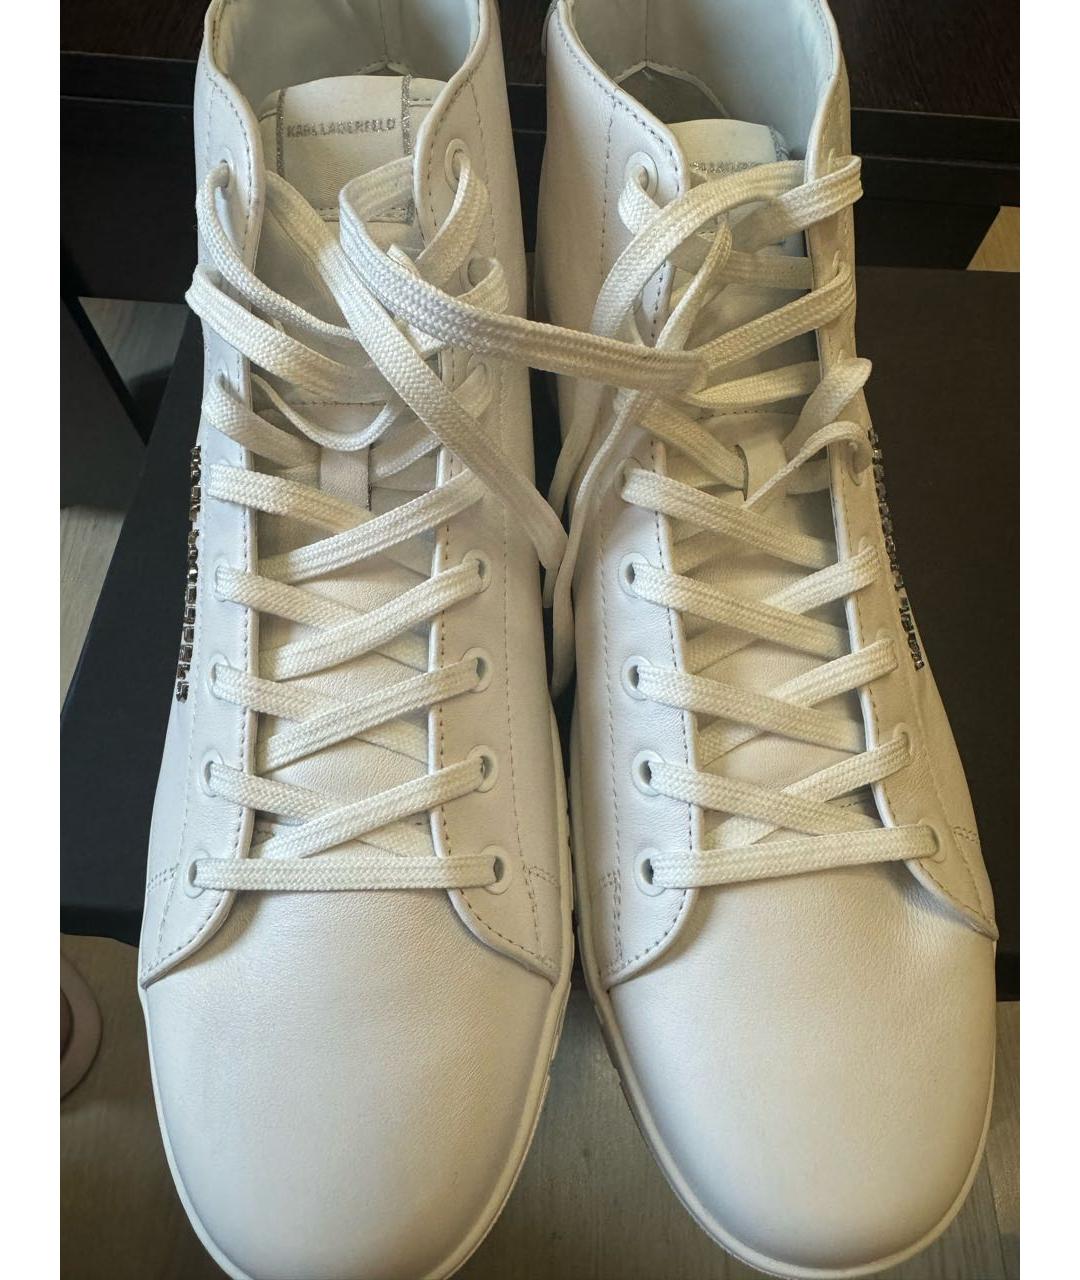 KARL LAGERFELD Белые кожаные высокие кроссовки / кеды, фото 2